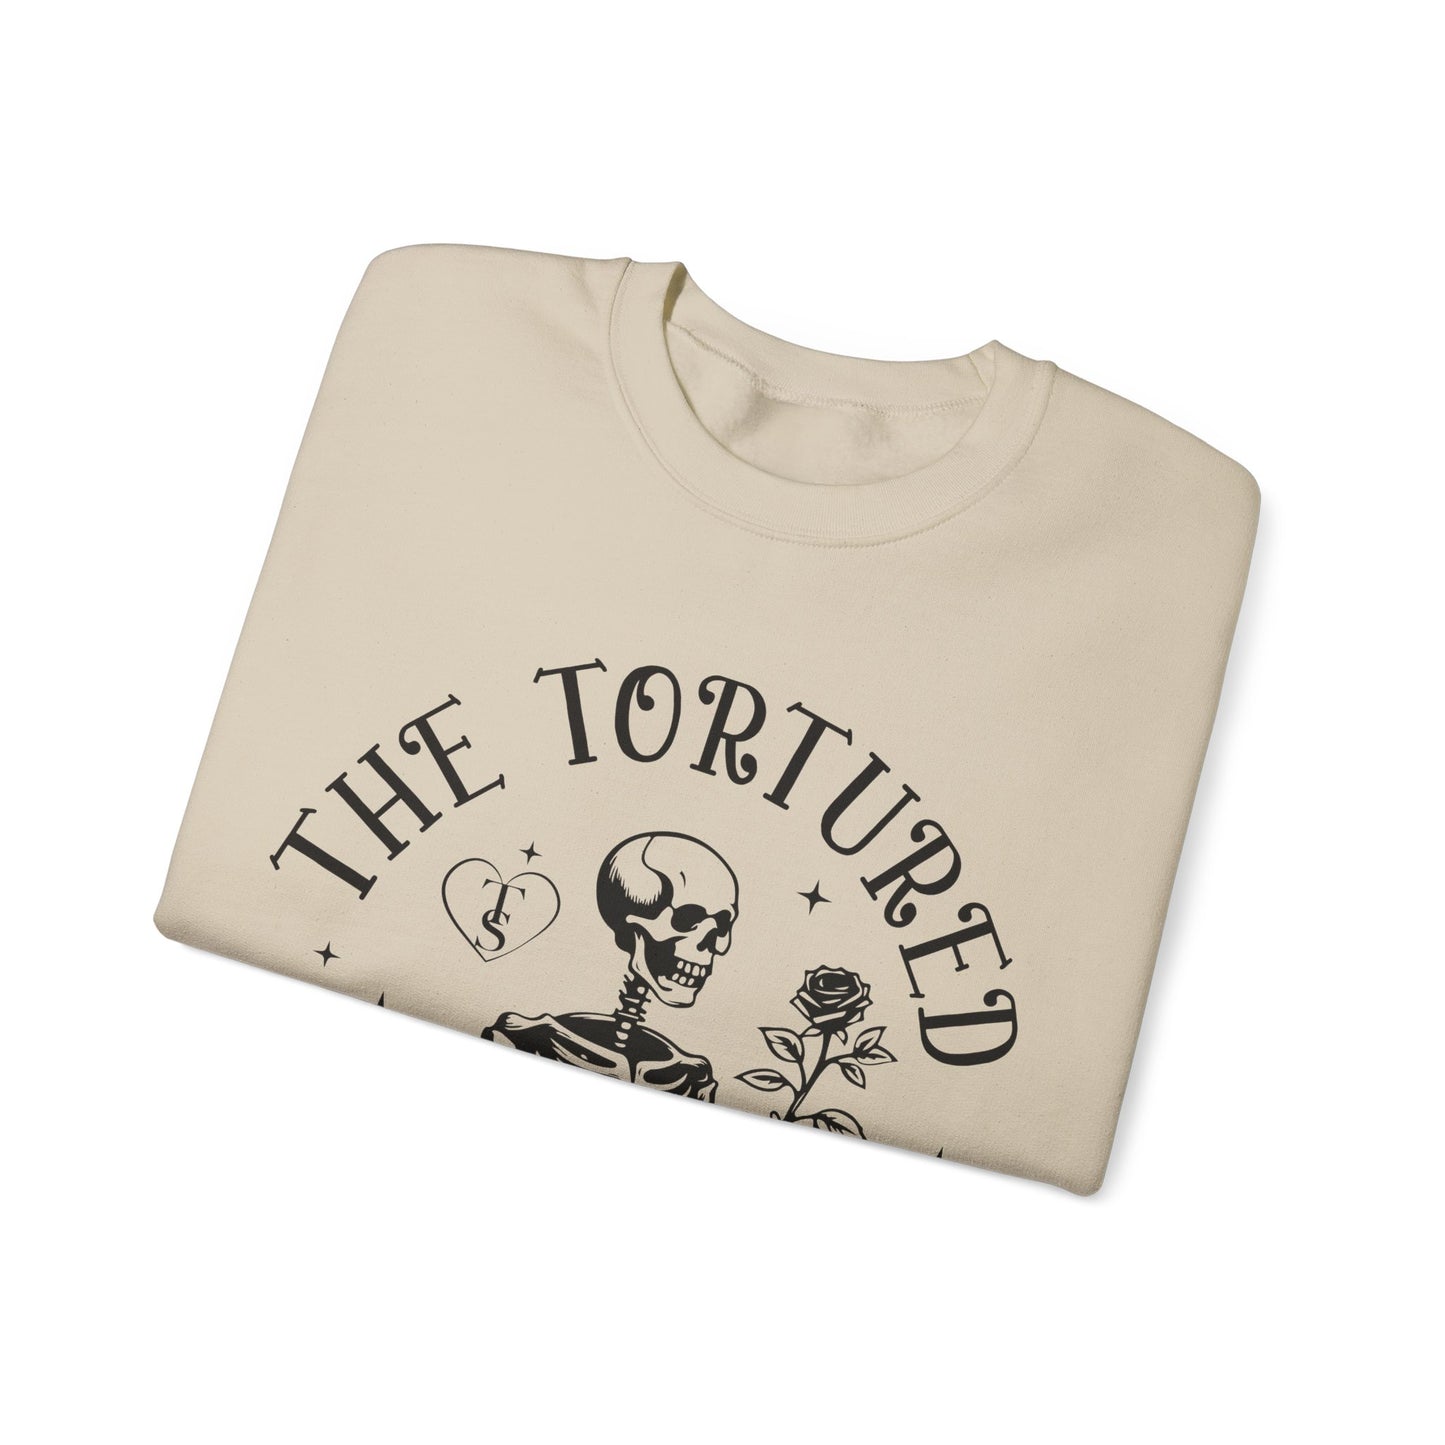 The Tortured Poet - Crewneck Sweatshirt